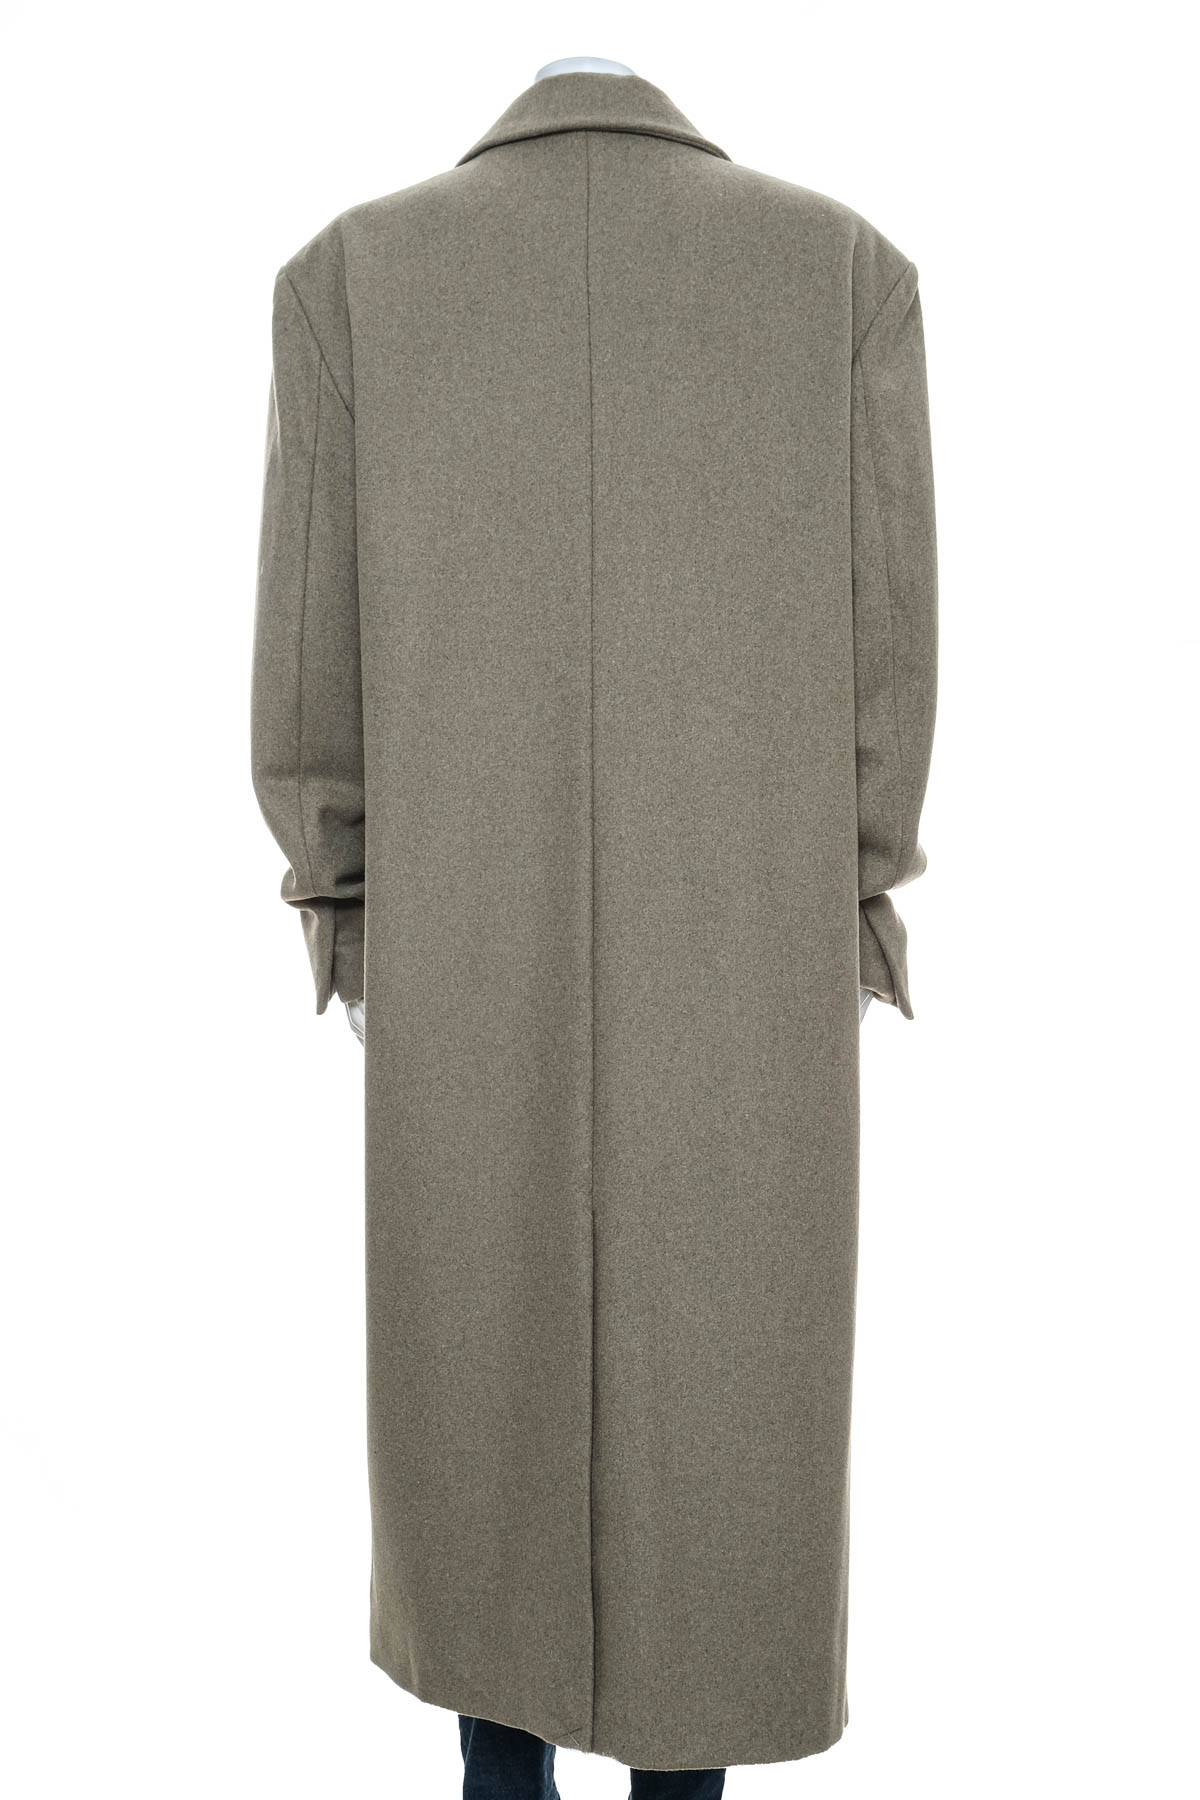 Women's coat - Josefine HJ x NA-KD - 1